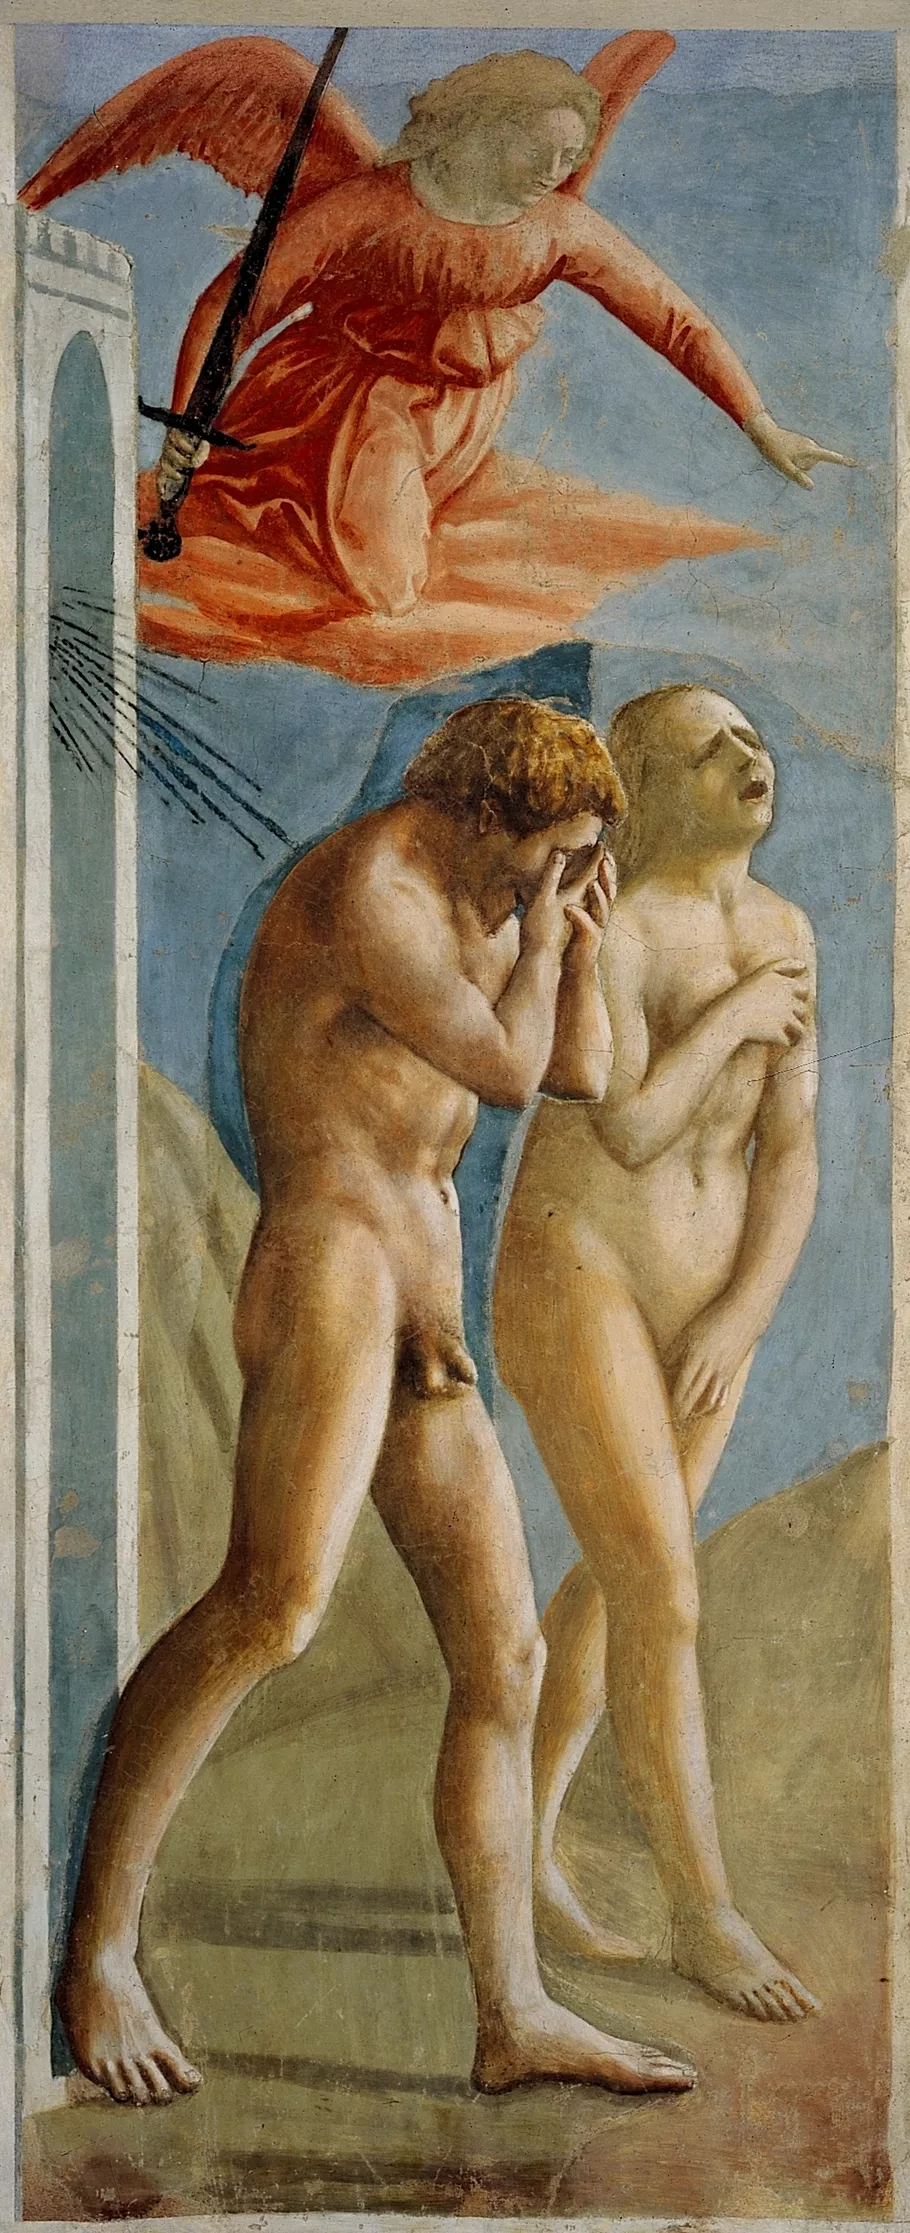 Expulsion from the Garden of Eden, 1425. Masaccio